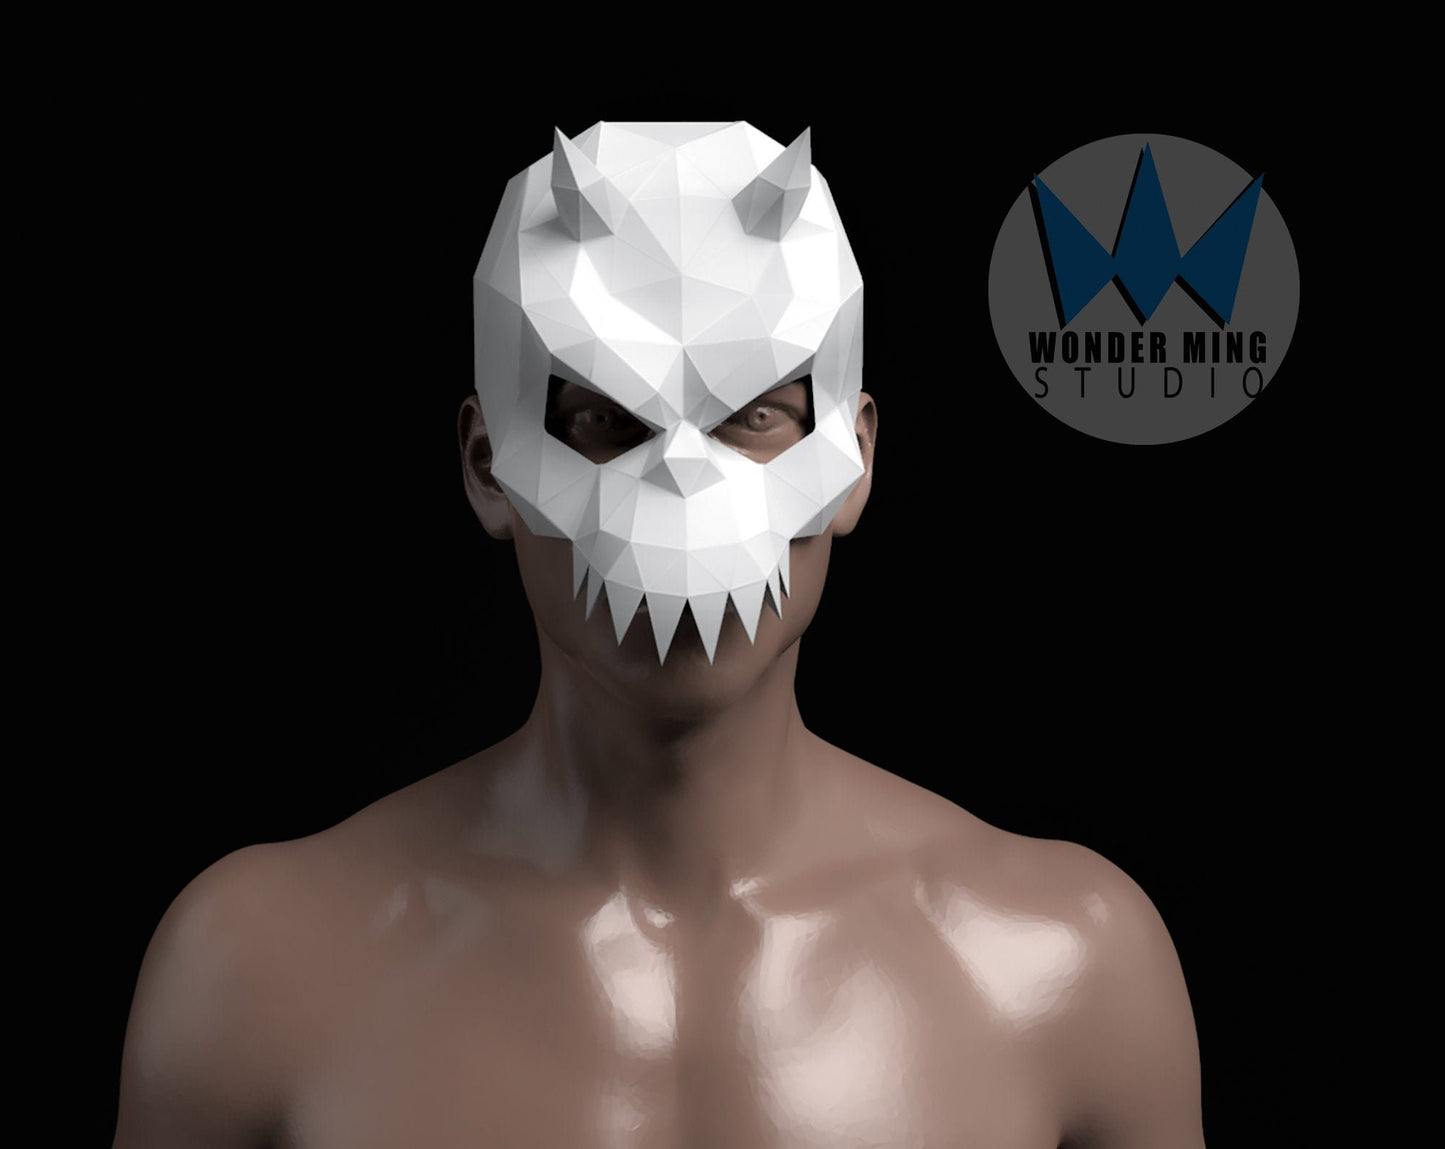 Demon Skull Mask